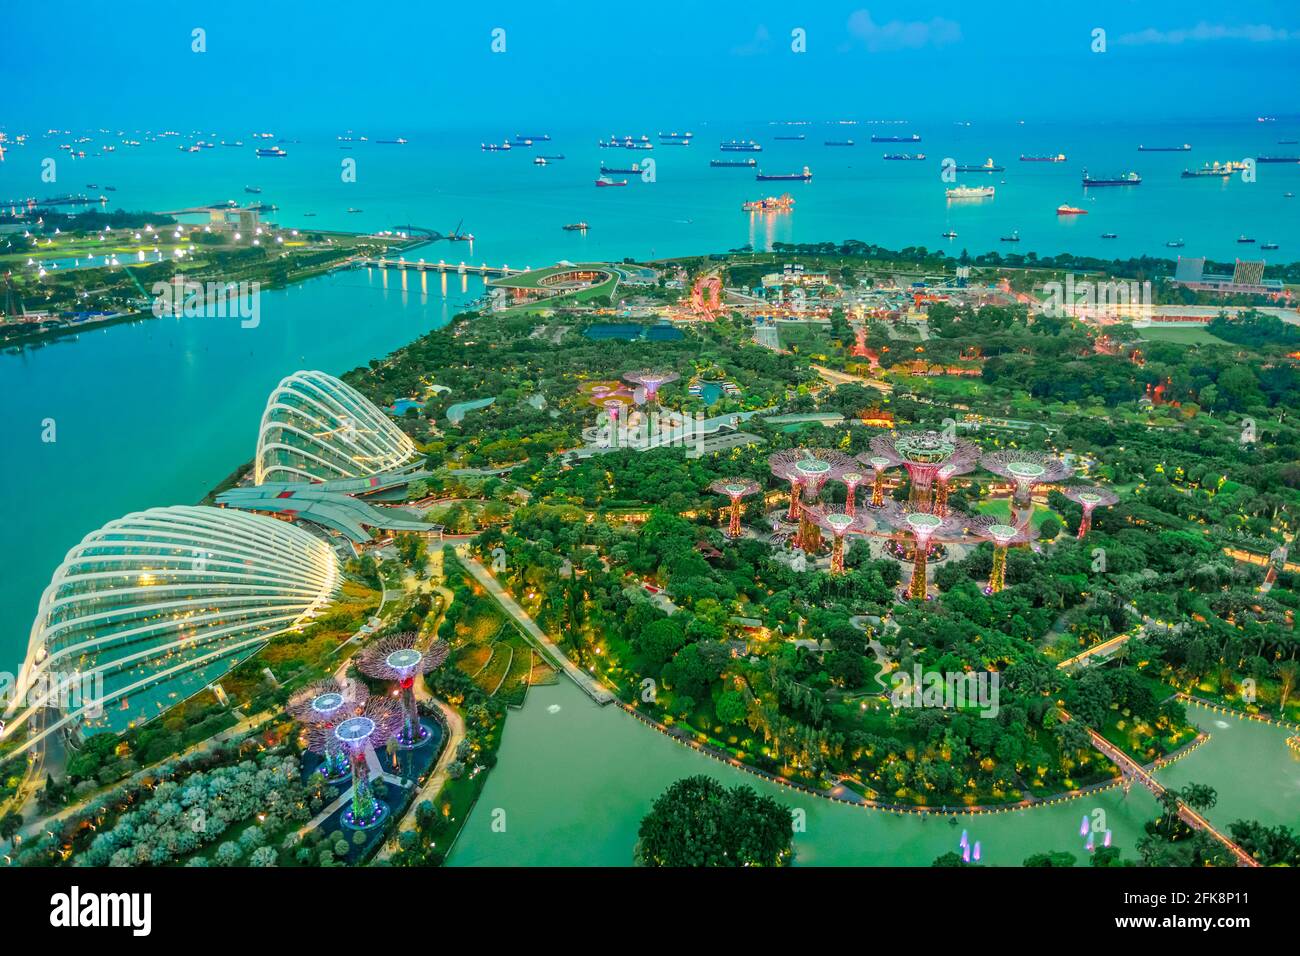 Singapur - 3. Mai 2018: Luftaufnahme des Stadtbildes Singapur und der Gärten an der Bucht. Berühmte Touristenattraktion in der Marina Bay Area, Singapur. Stockfoto